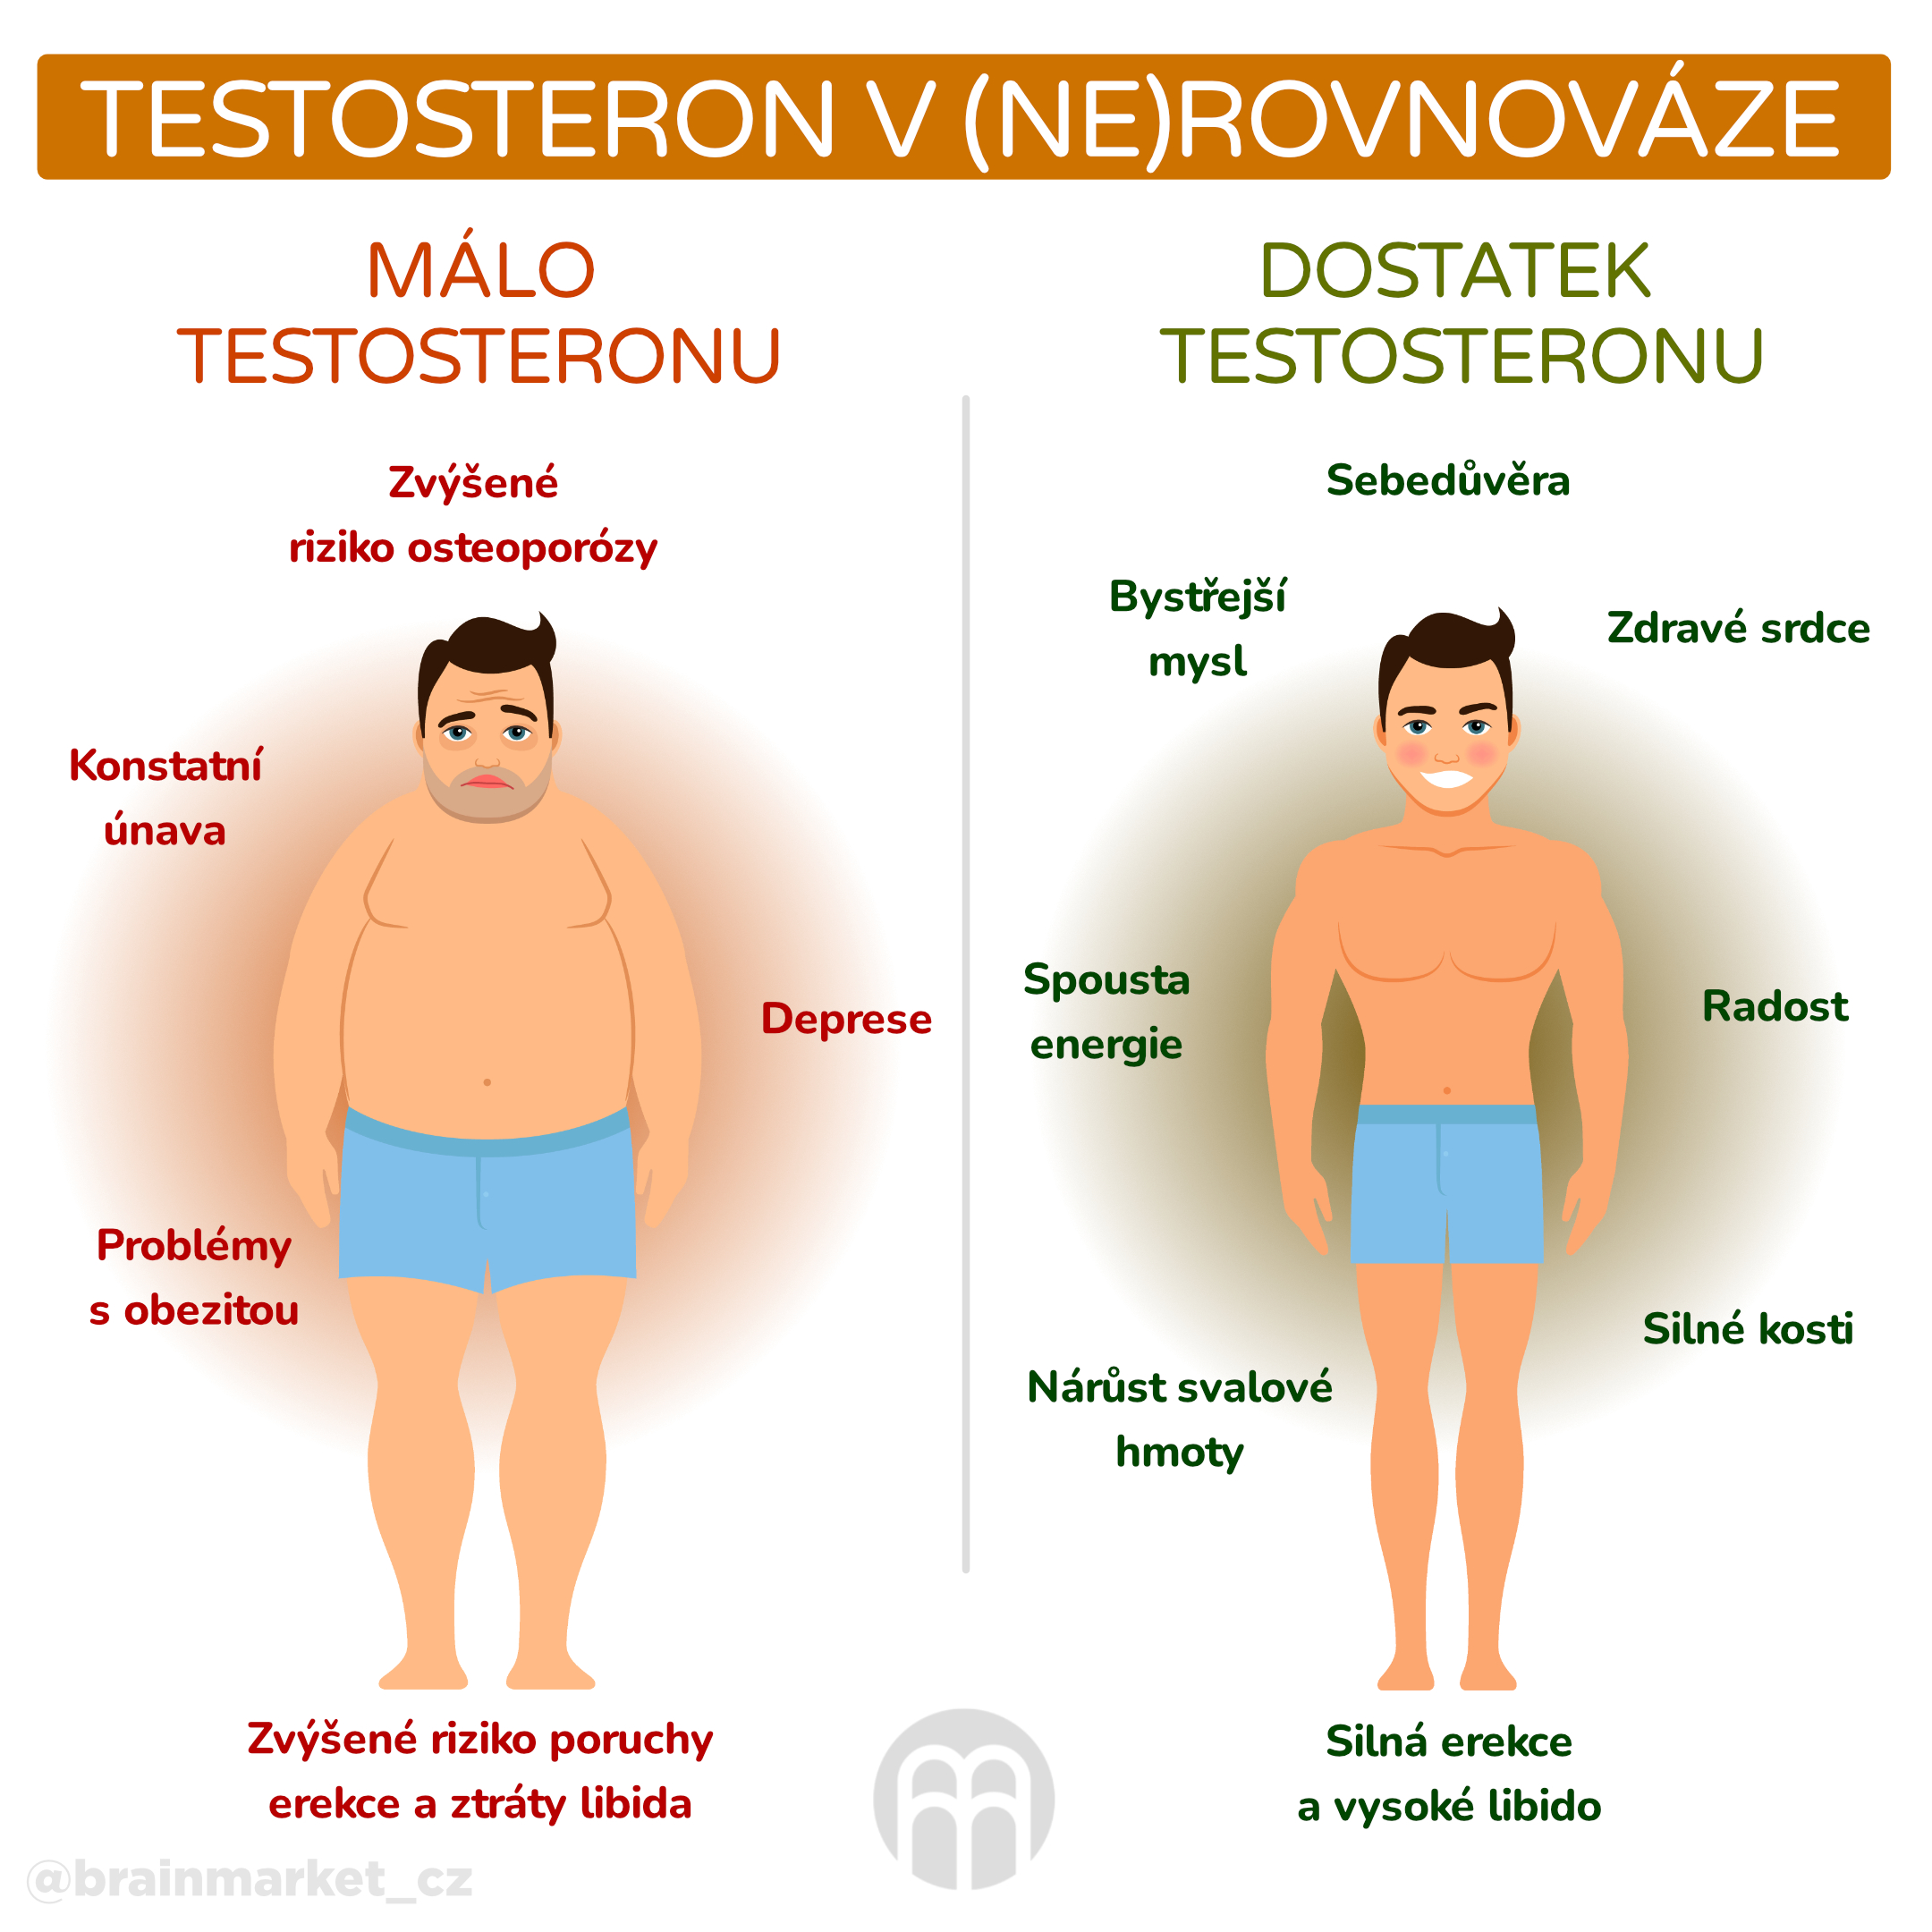 testosteron v ne rovnovaze_infografika_cz (1)